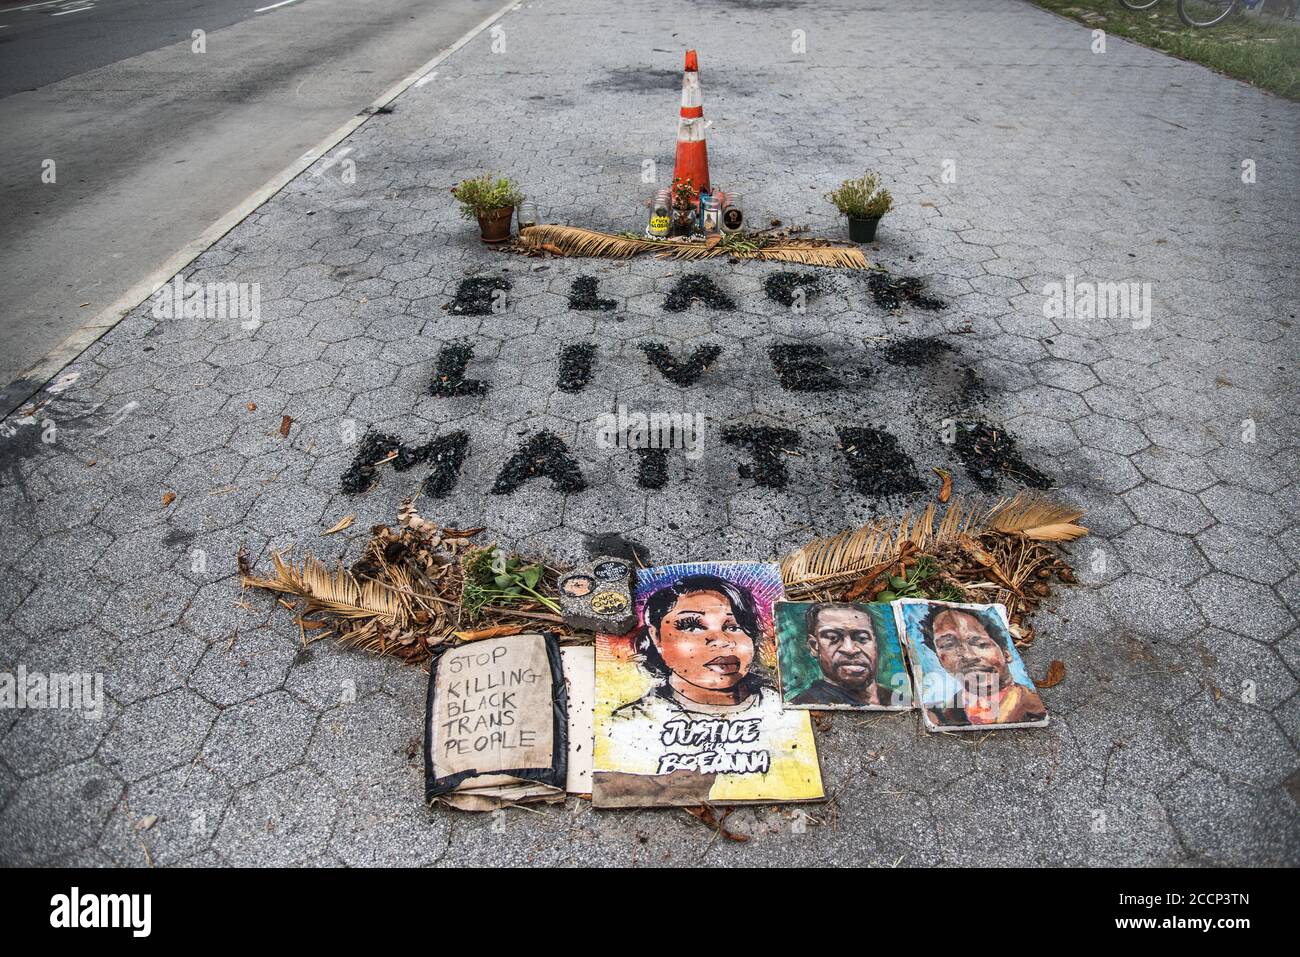 Das Black Lives Matter Memorial wurde aus Asche-Überresten des NYPD-Polizeiwagens erstellt, der am 29 2020. Mai im Fort Greene Park in Brooklyn, New York, in Brand gesetzt wurde. Stockfoto